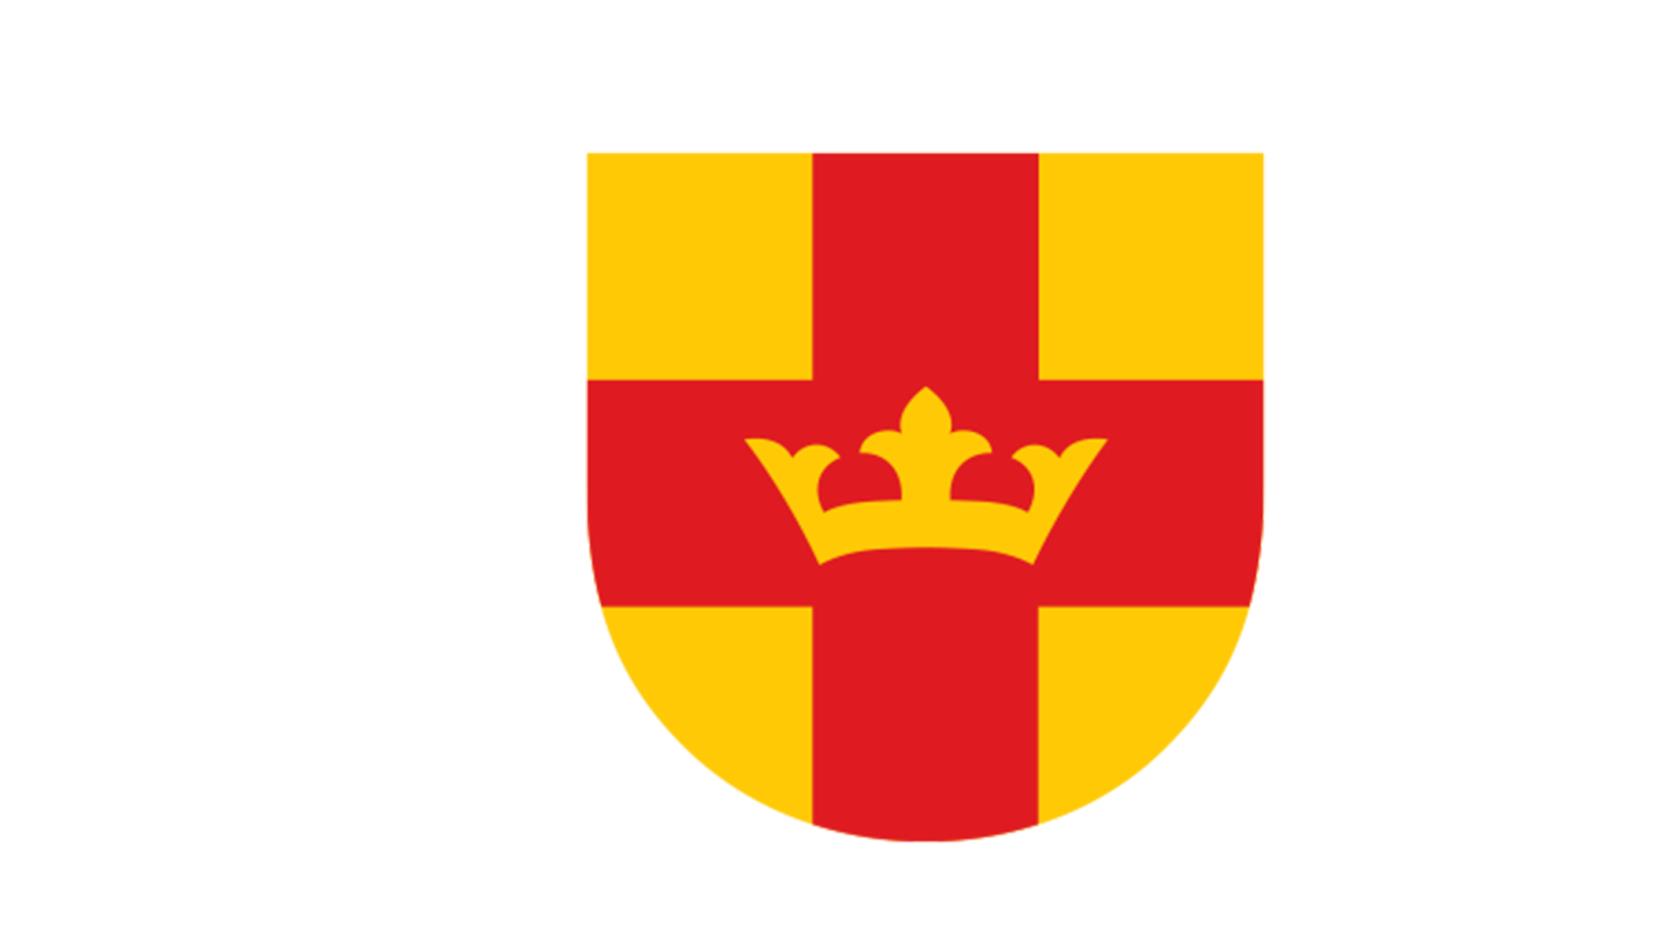 Svenska kyrkans vapensköld i rött och gult med en krona.